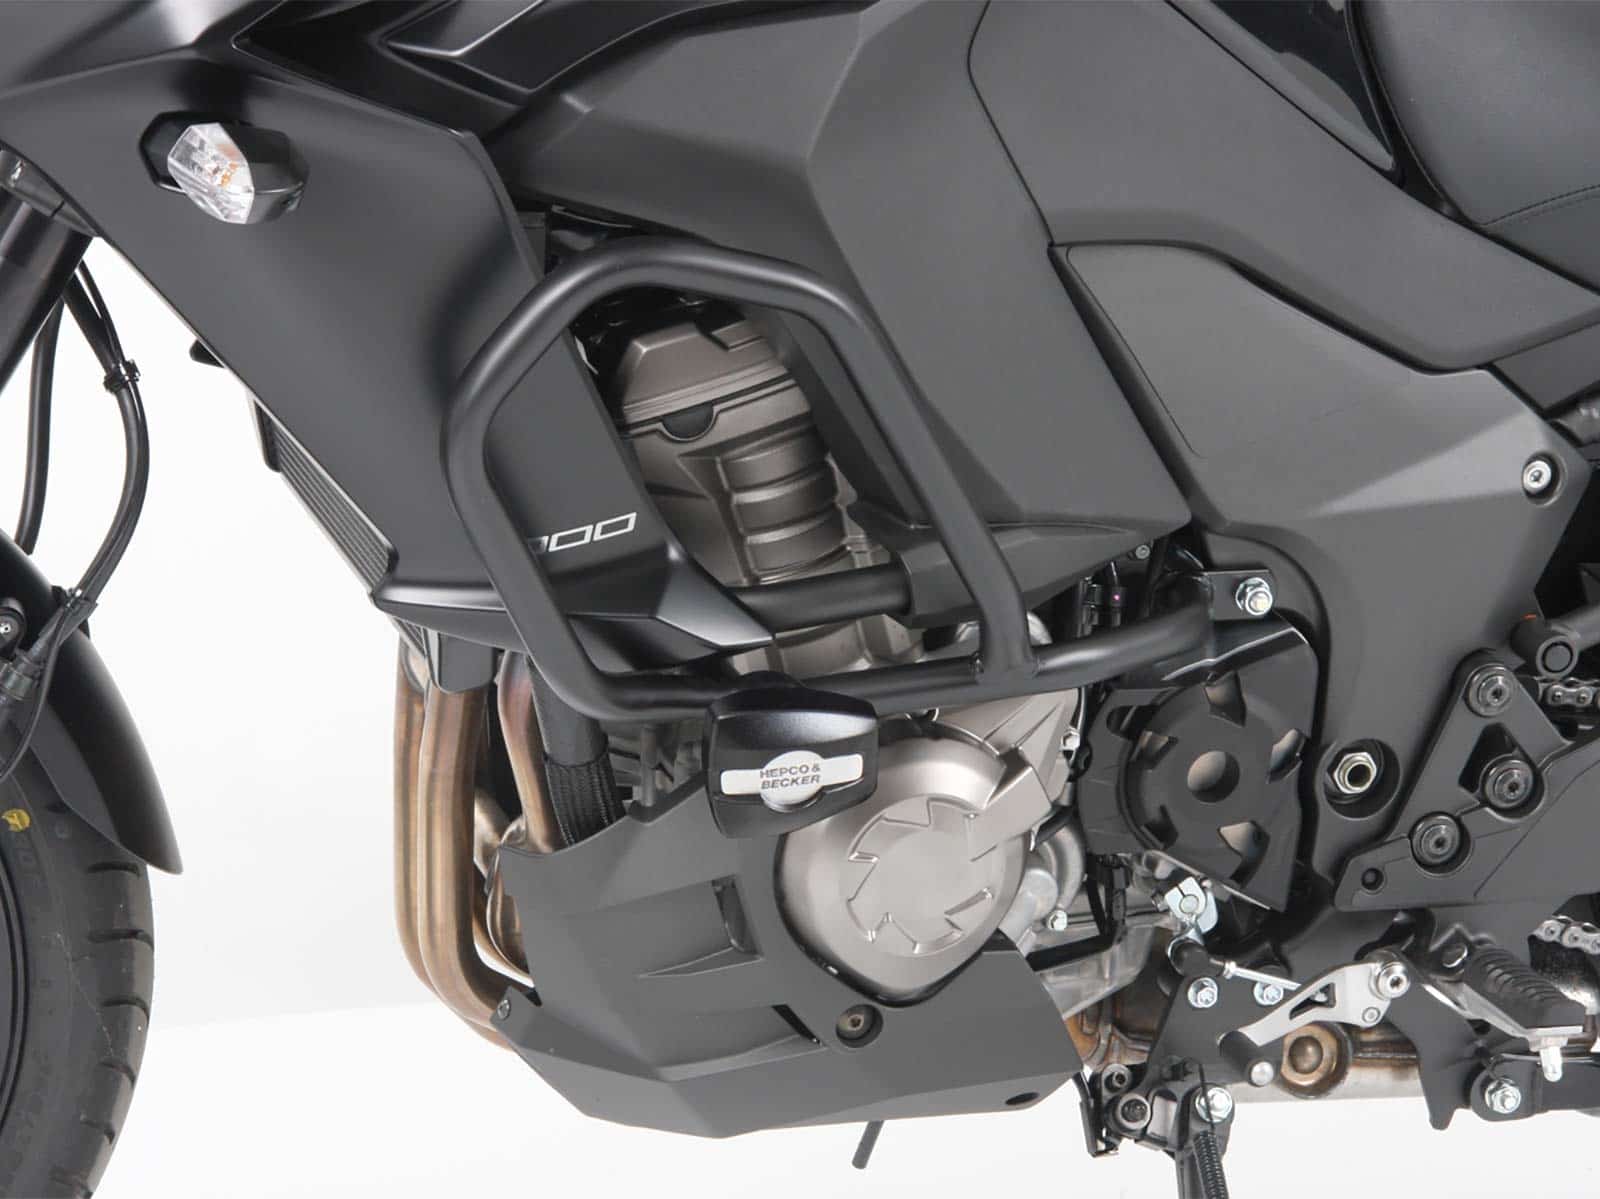 Engine protection bar black for Kawasaki Versys 1000 (2015-2018)